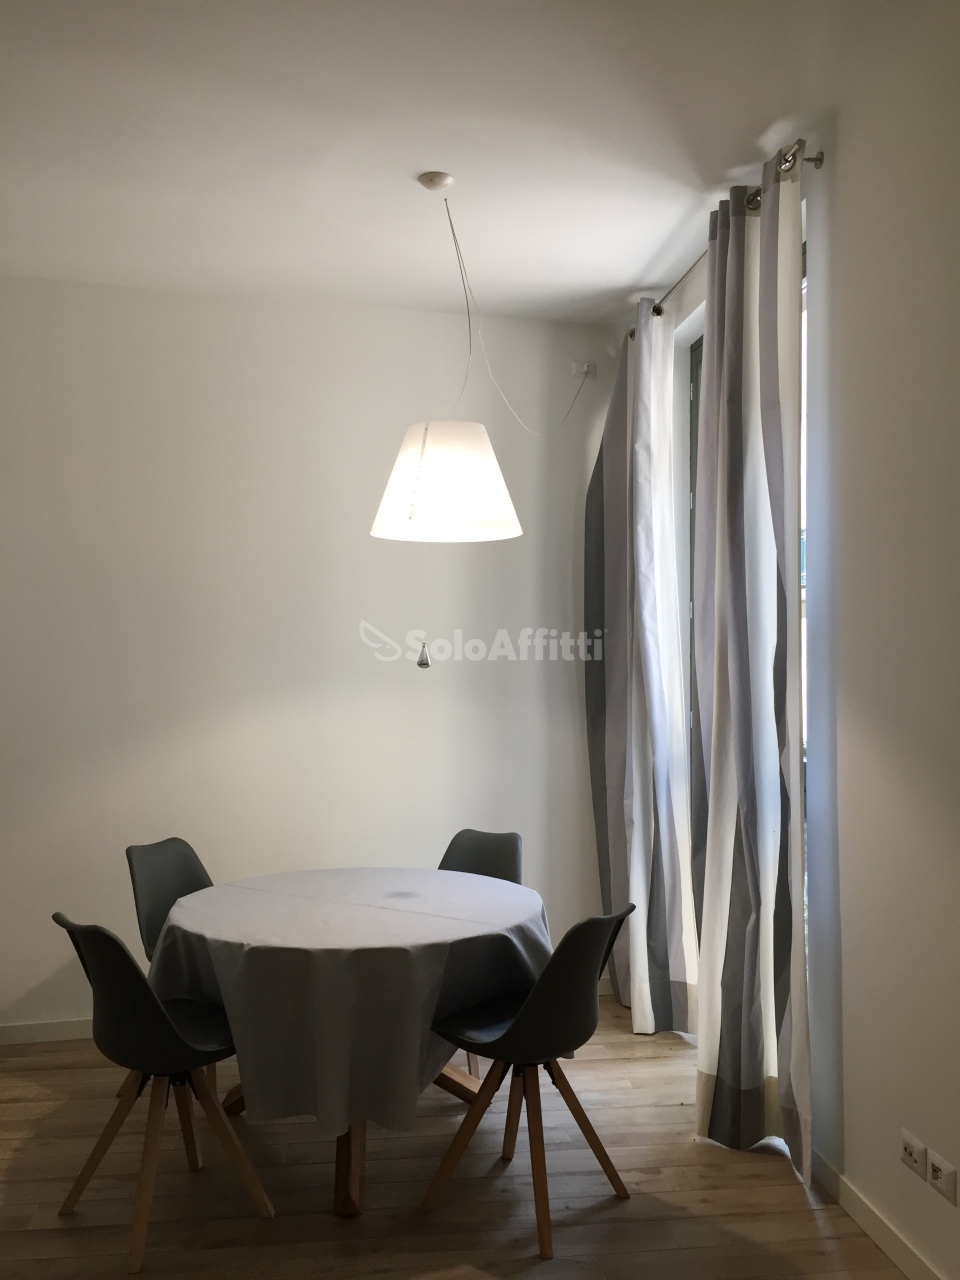 Appartamento in affitto a Chieri, 2 locali, prezzo € 450 | PortaleAgenzieImmobiliari.it